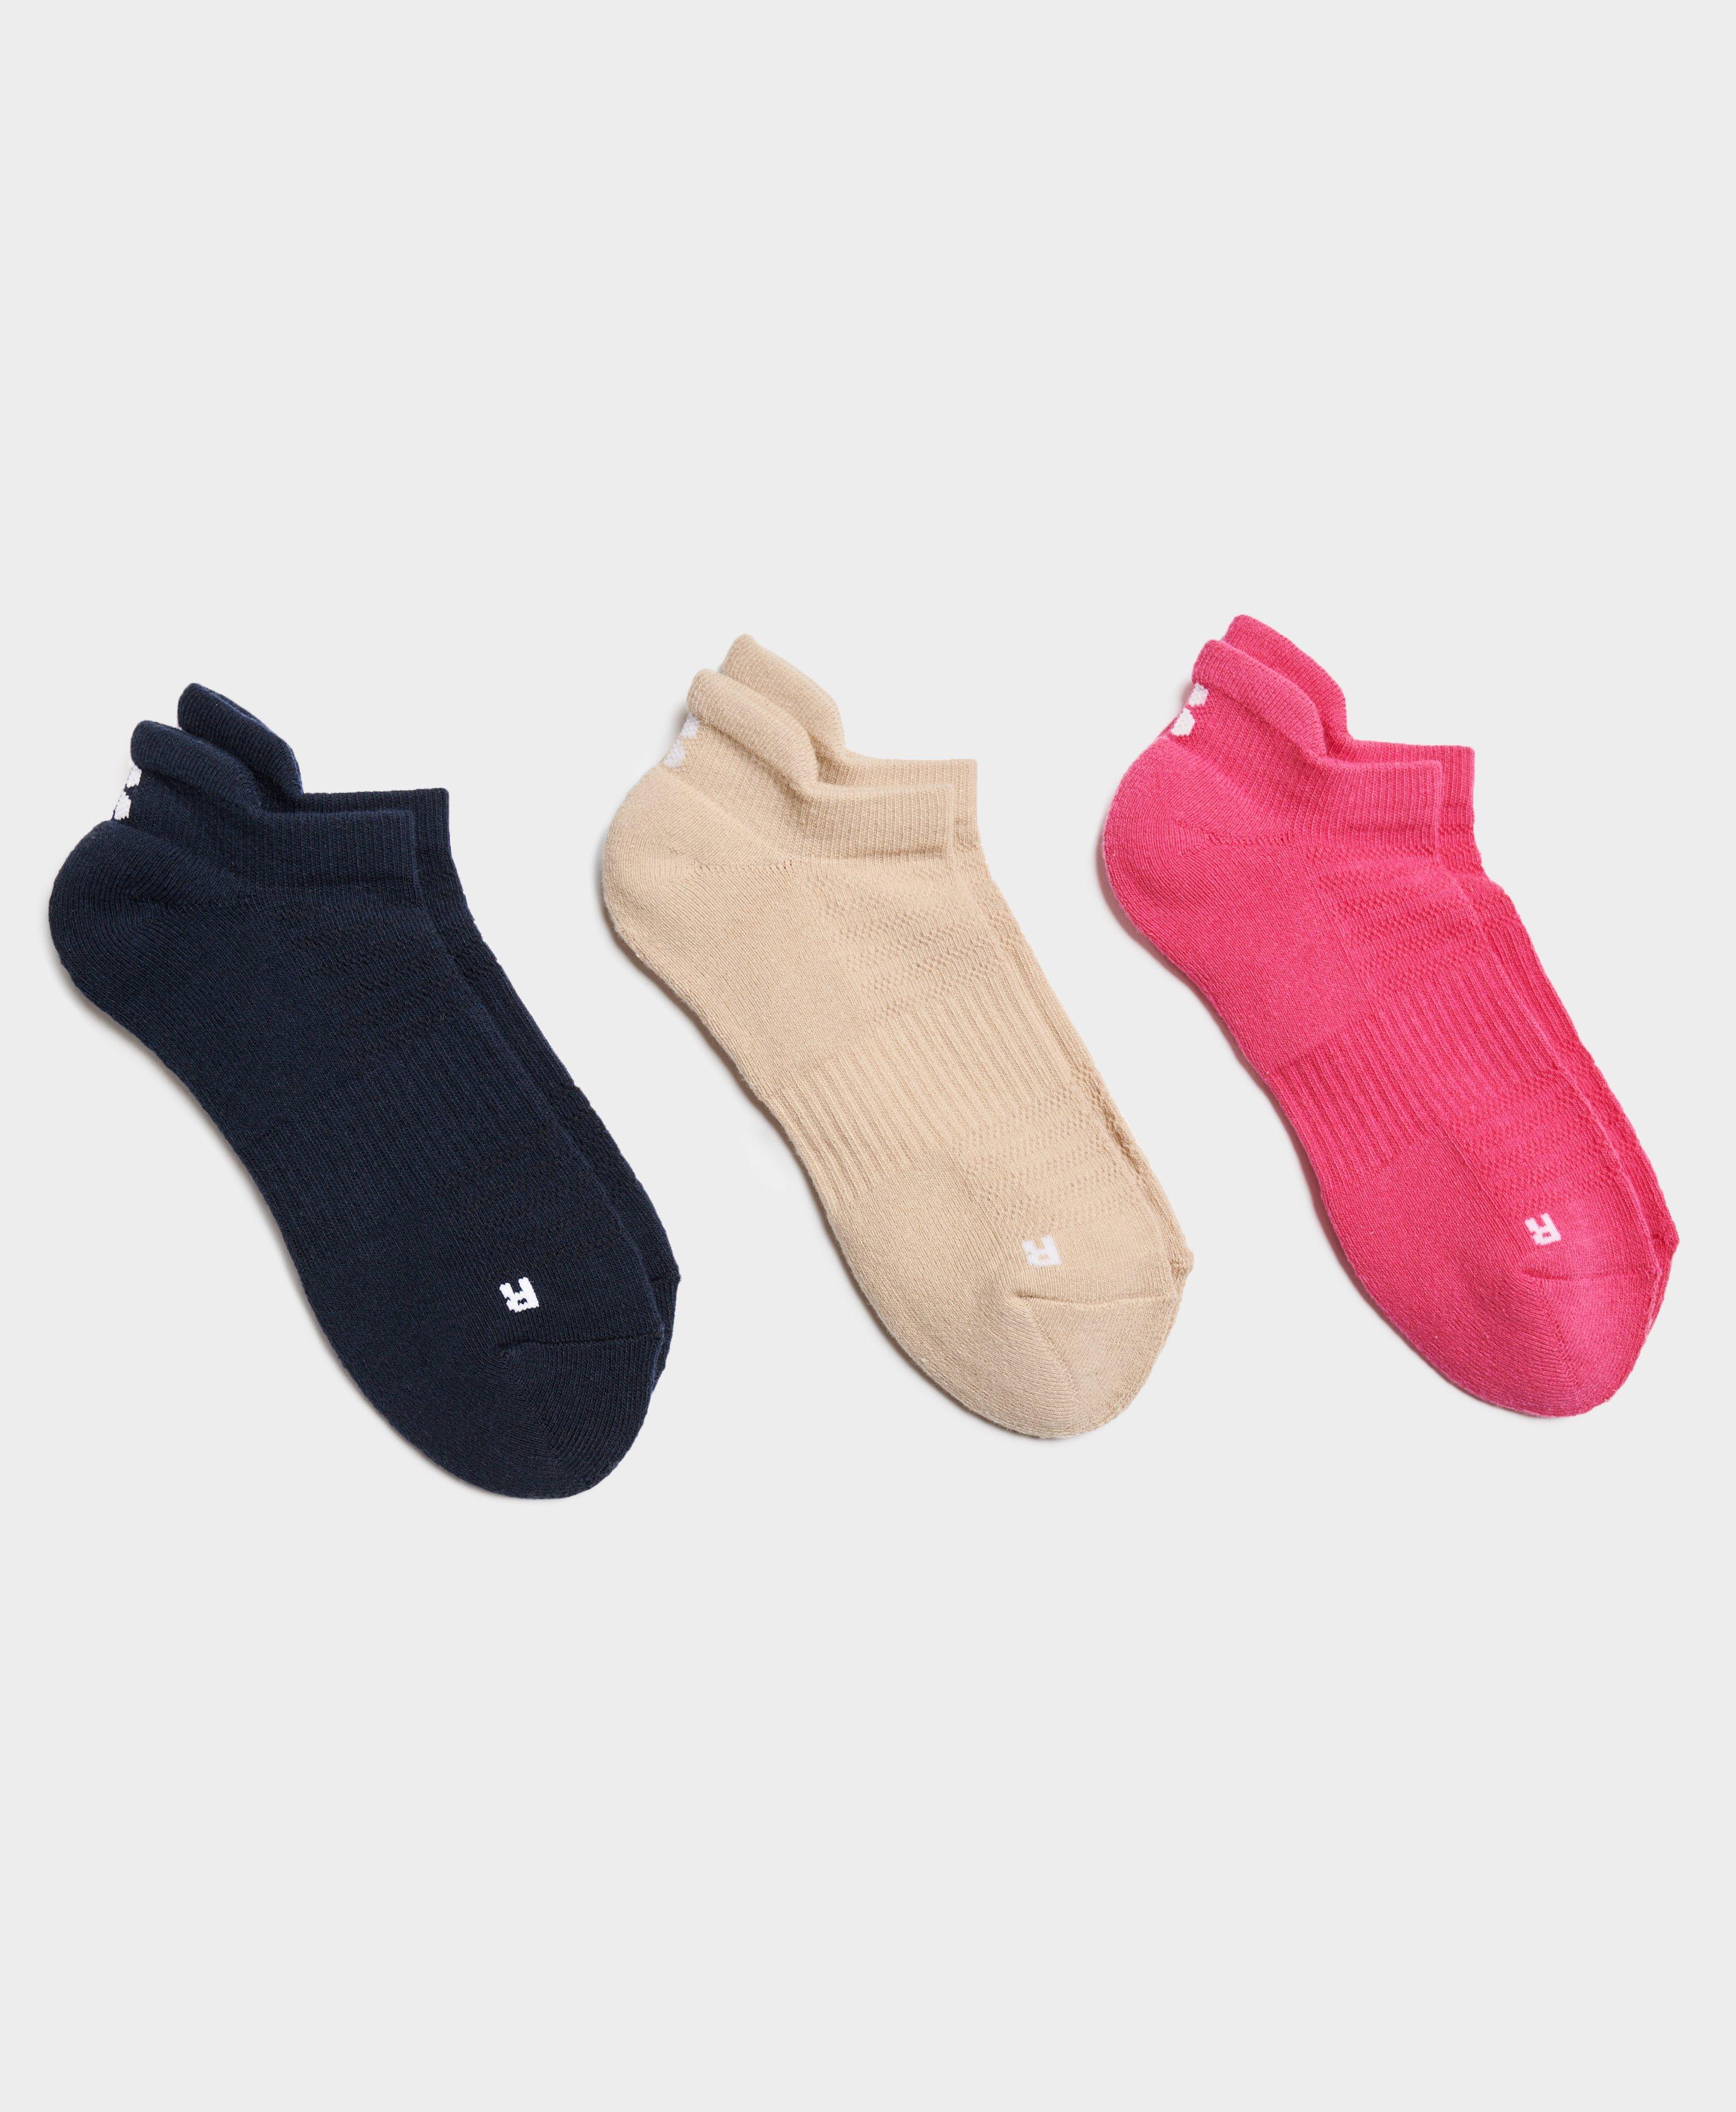  Sintege 6 Pairs Pilates Socks Grip Socks for Women Non Slip  Yoga Socks Barefoot Workout Crew Socks for Pregnant Ballet Dance :  Clothing, Shoes & Jewelry